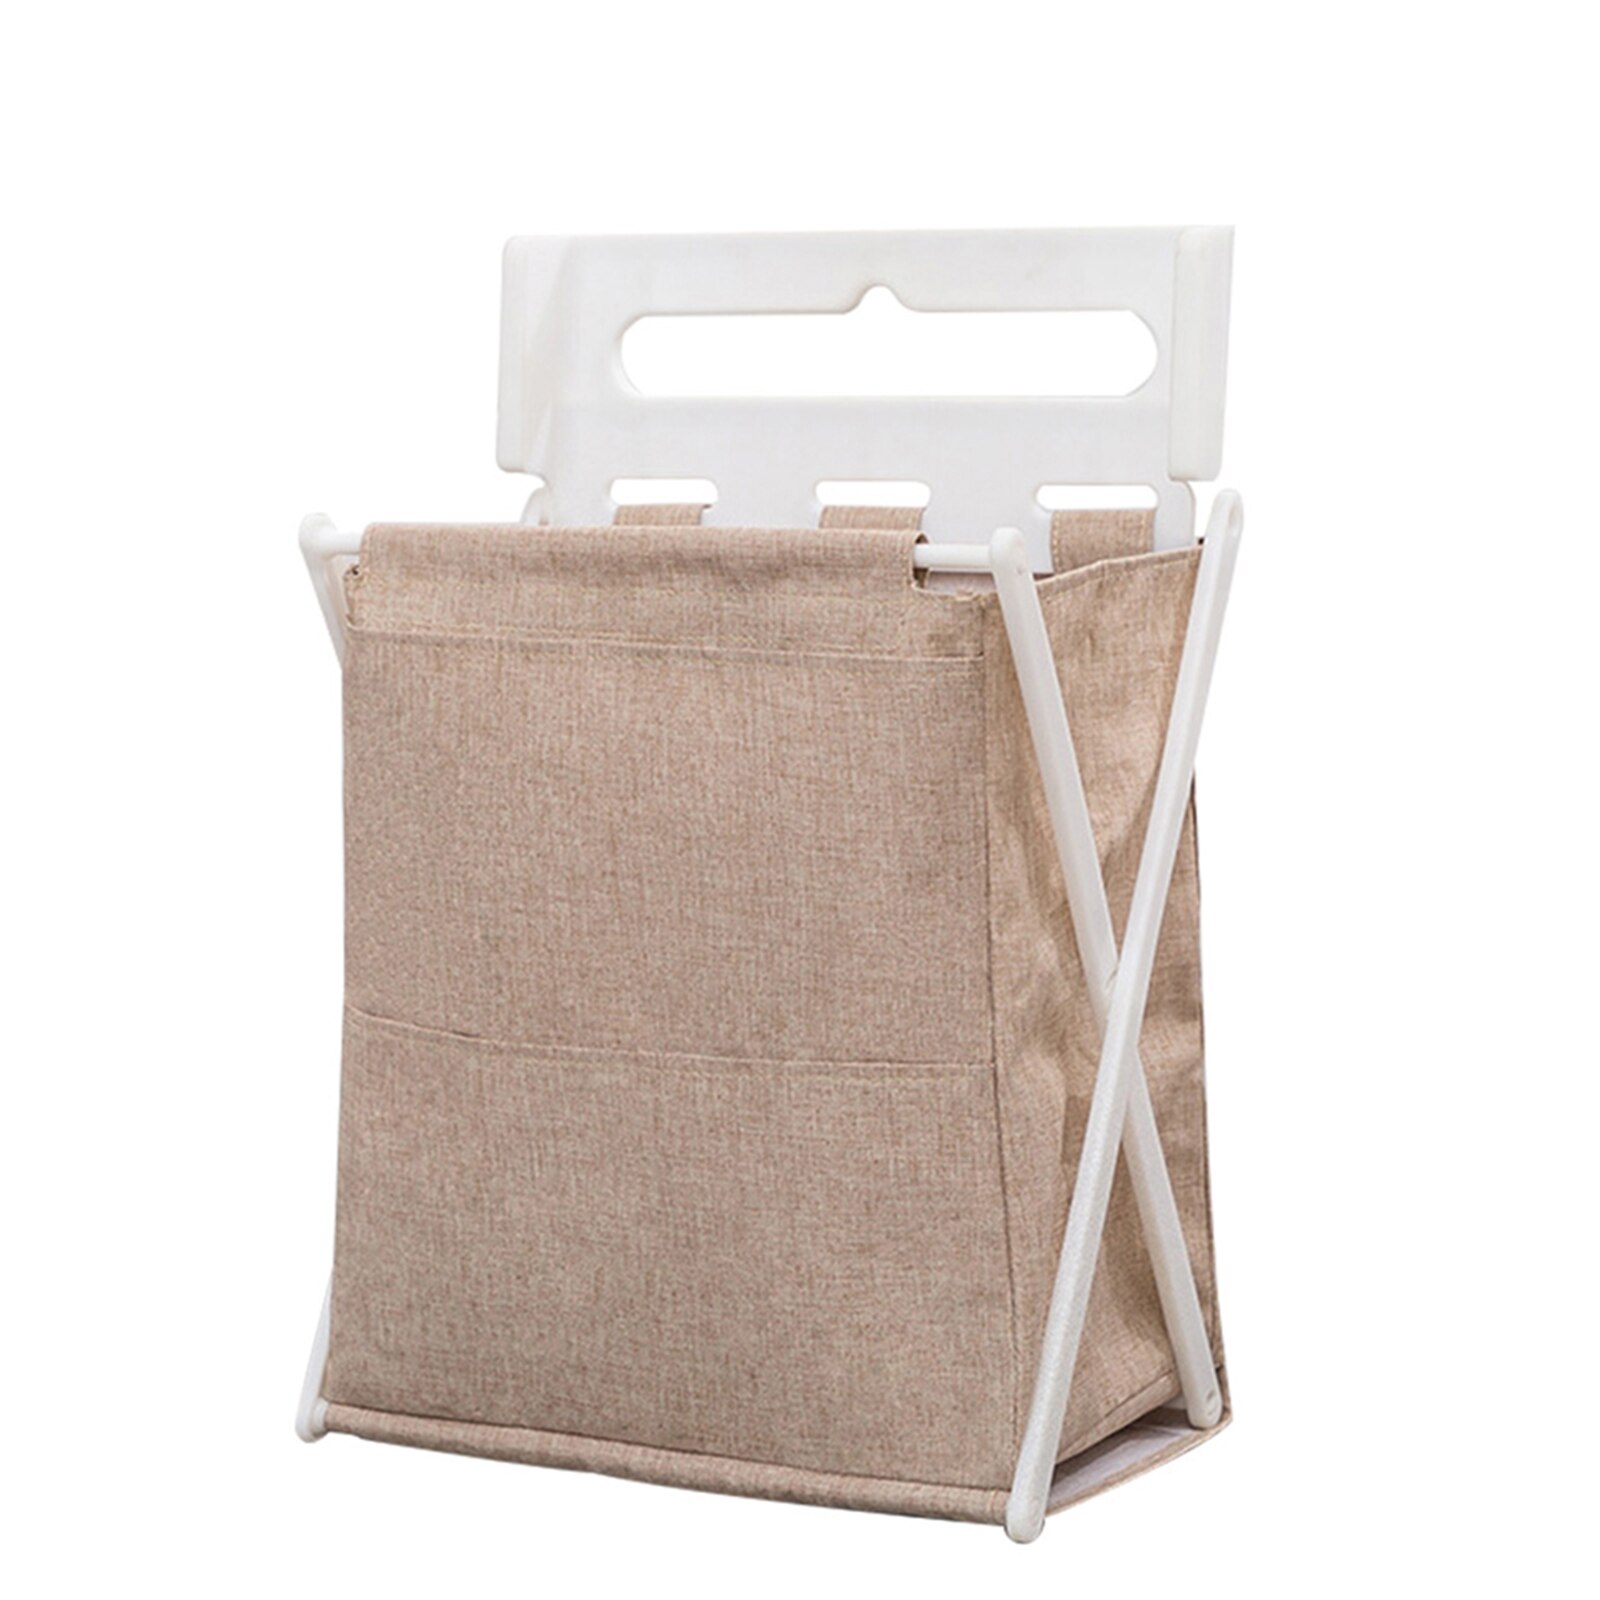 Wall Mounted Laundry Organizer Bag Foldable Washable Laundry Basket Home Clothes Storage Hamper @LS: khaki